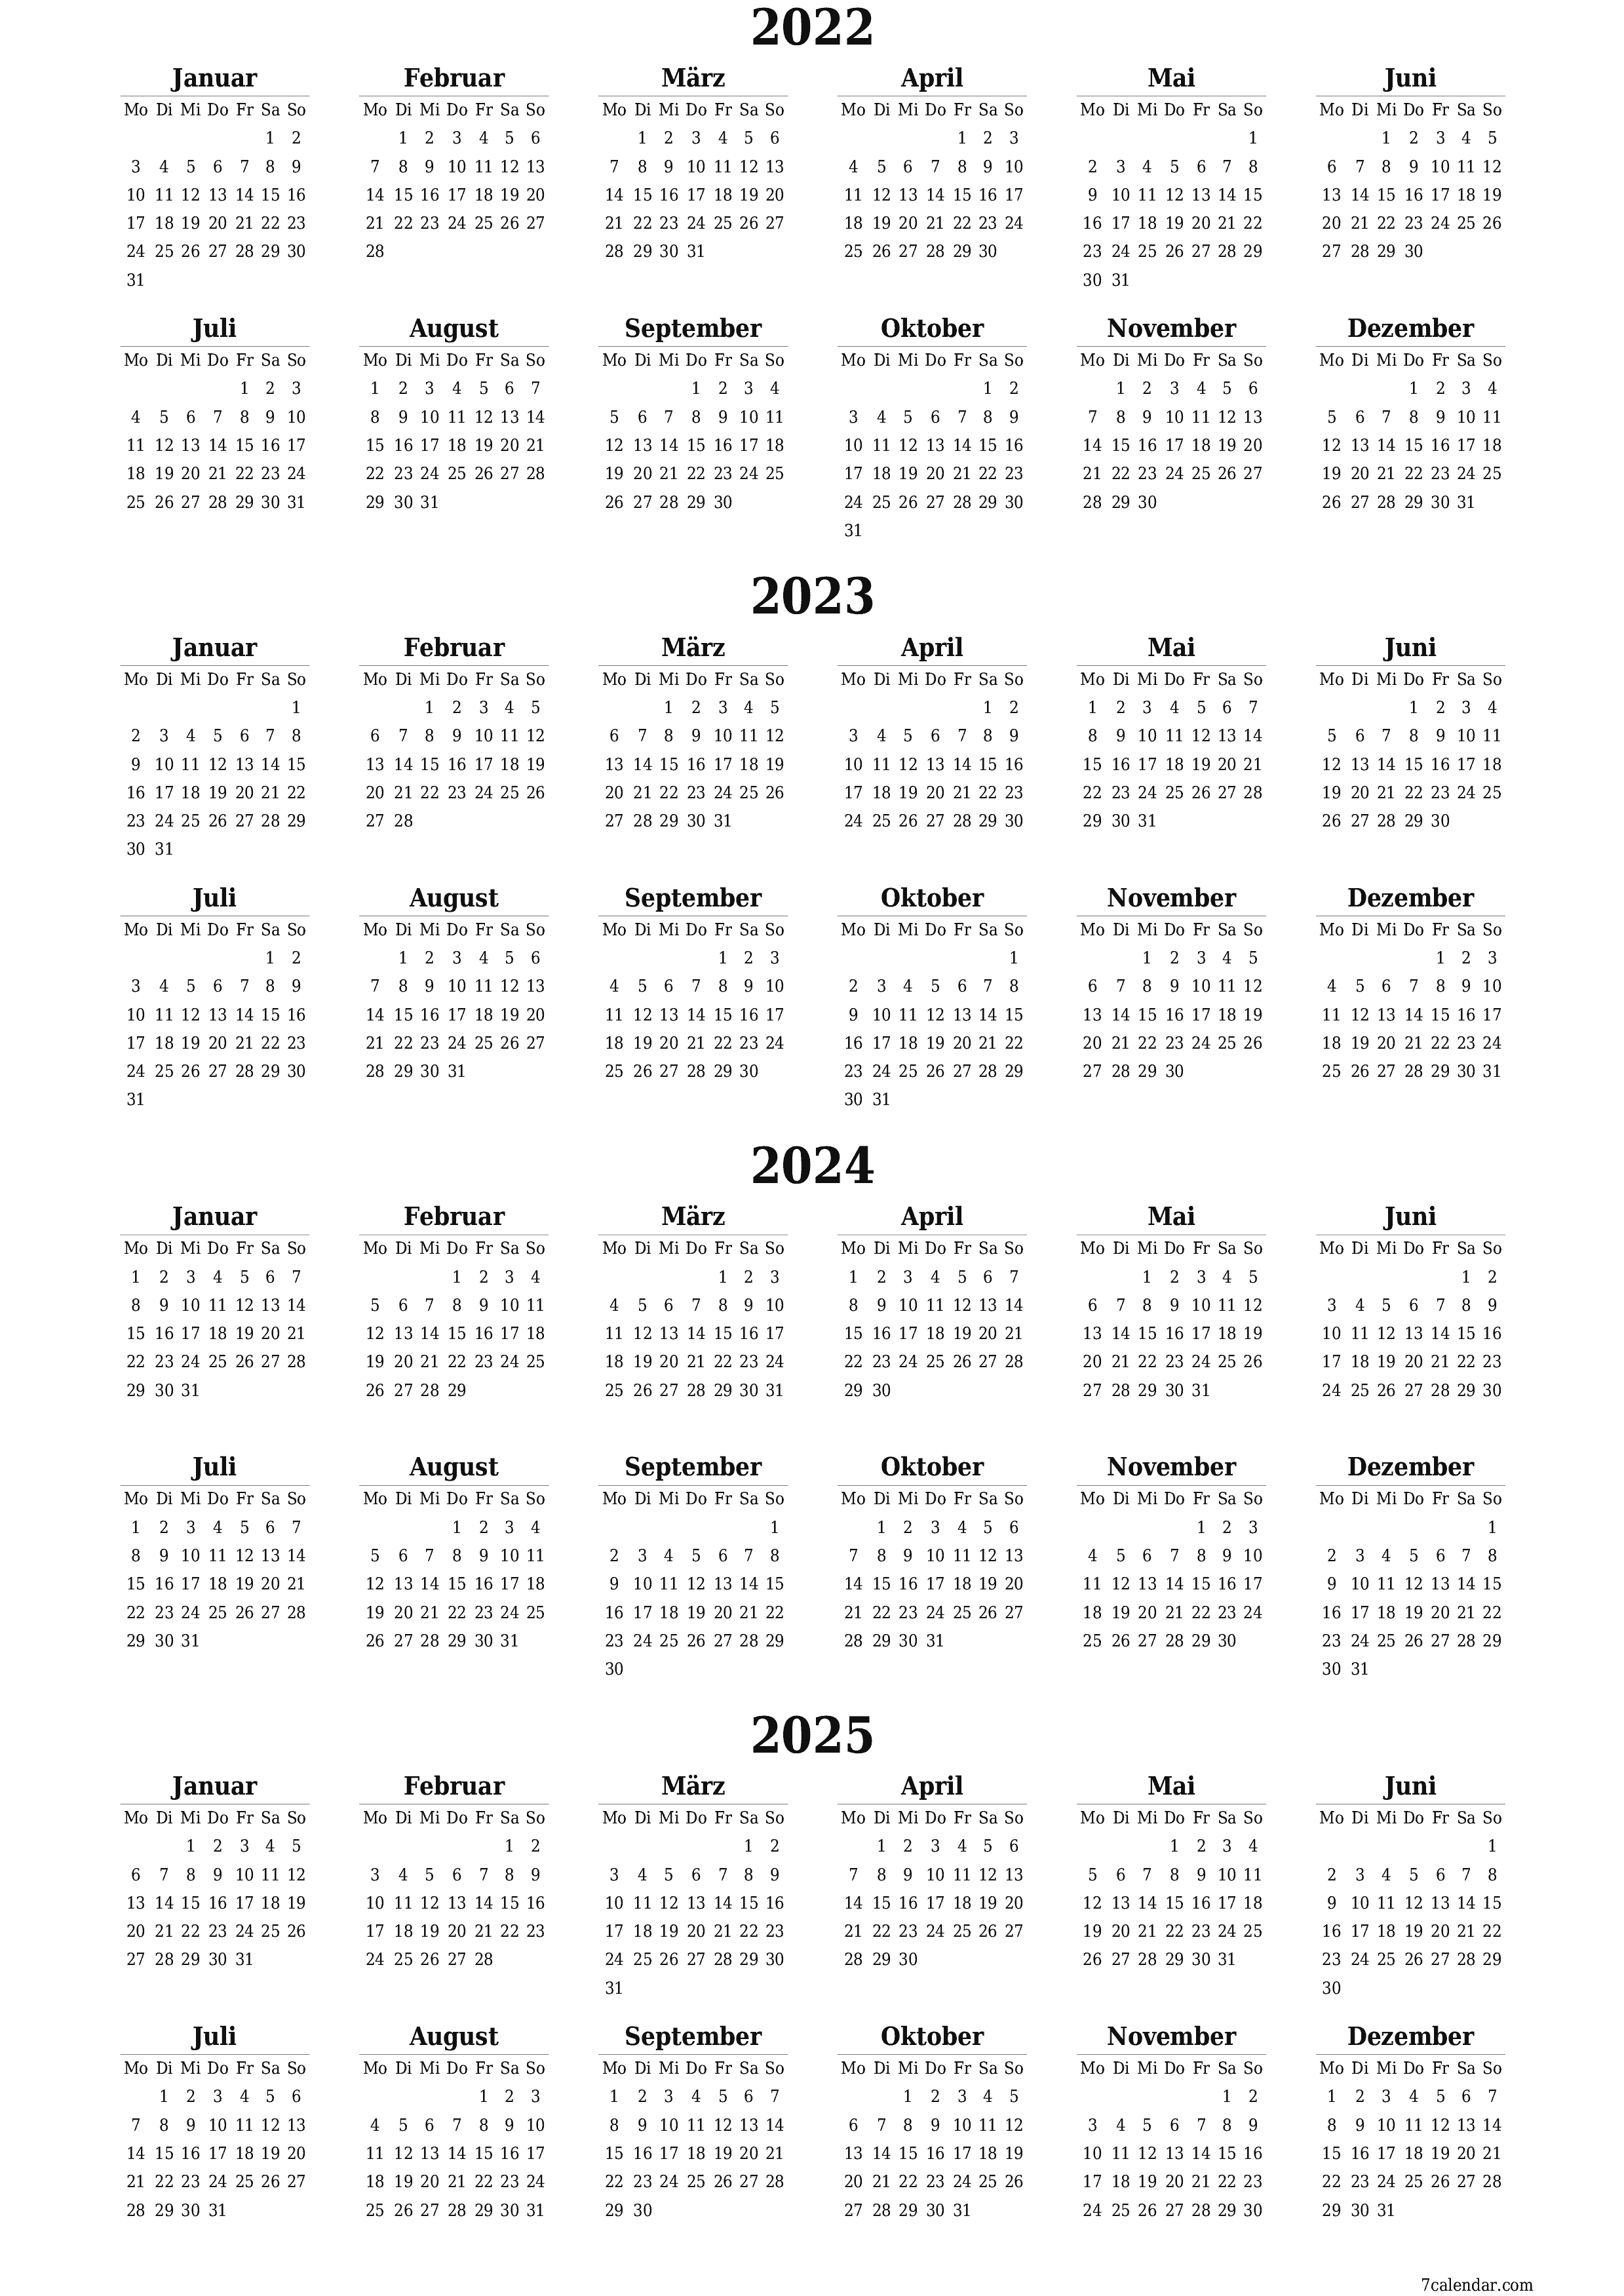 Leerer Jahreskalender für das Jahr 2022, 2023, 2024, 2025 speichern und als PDF PNG German - 7calendar.com drucken